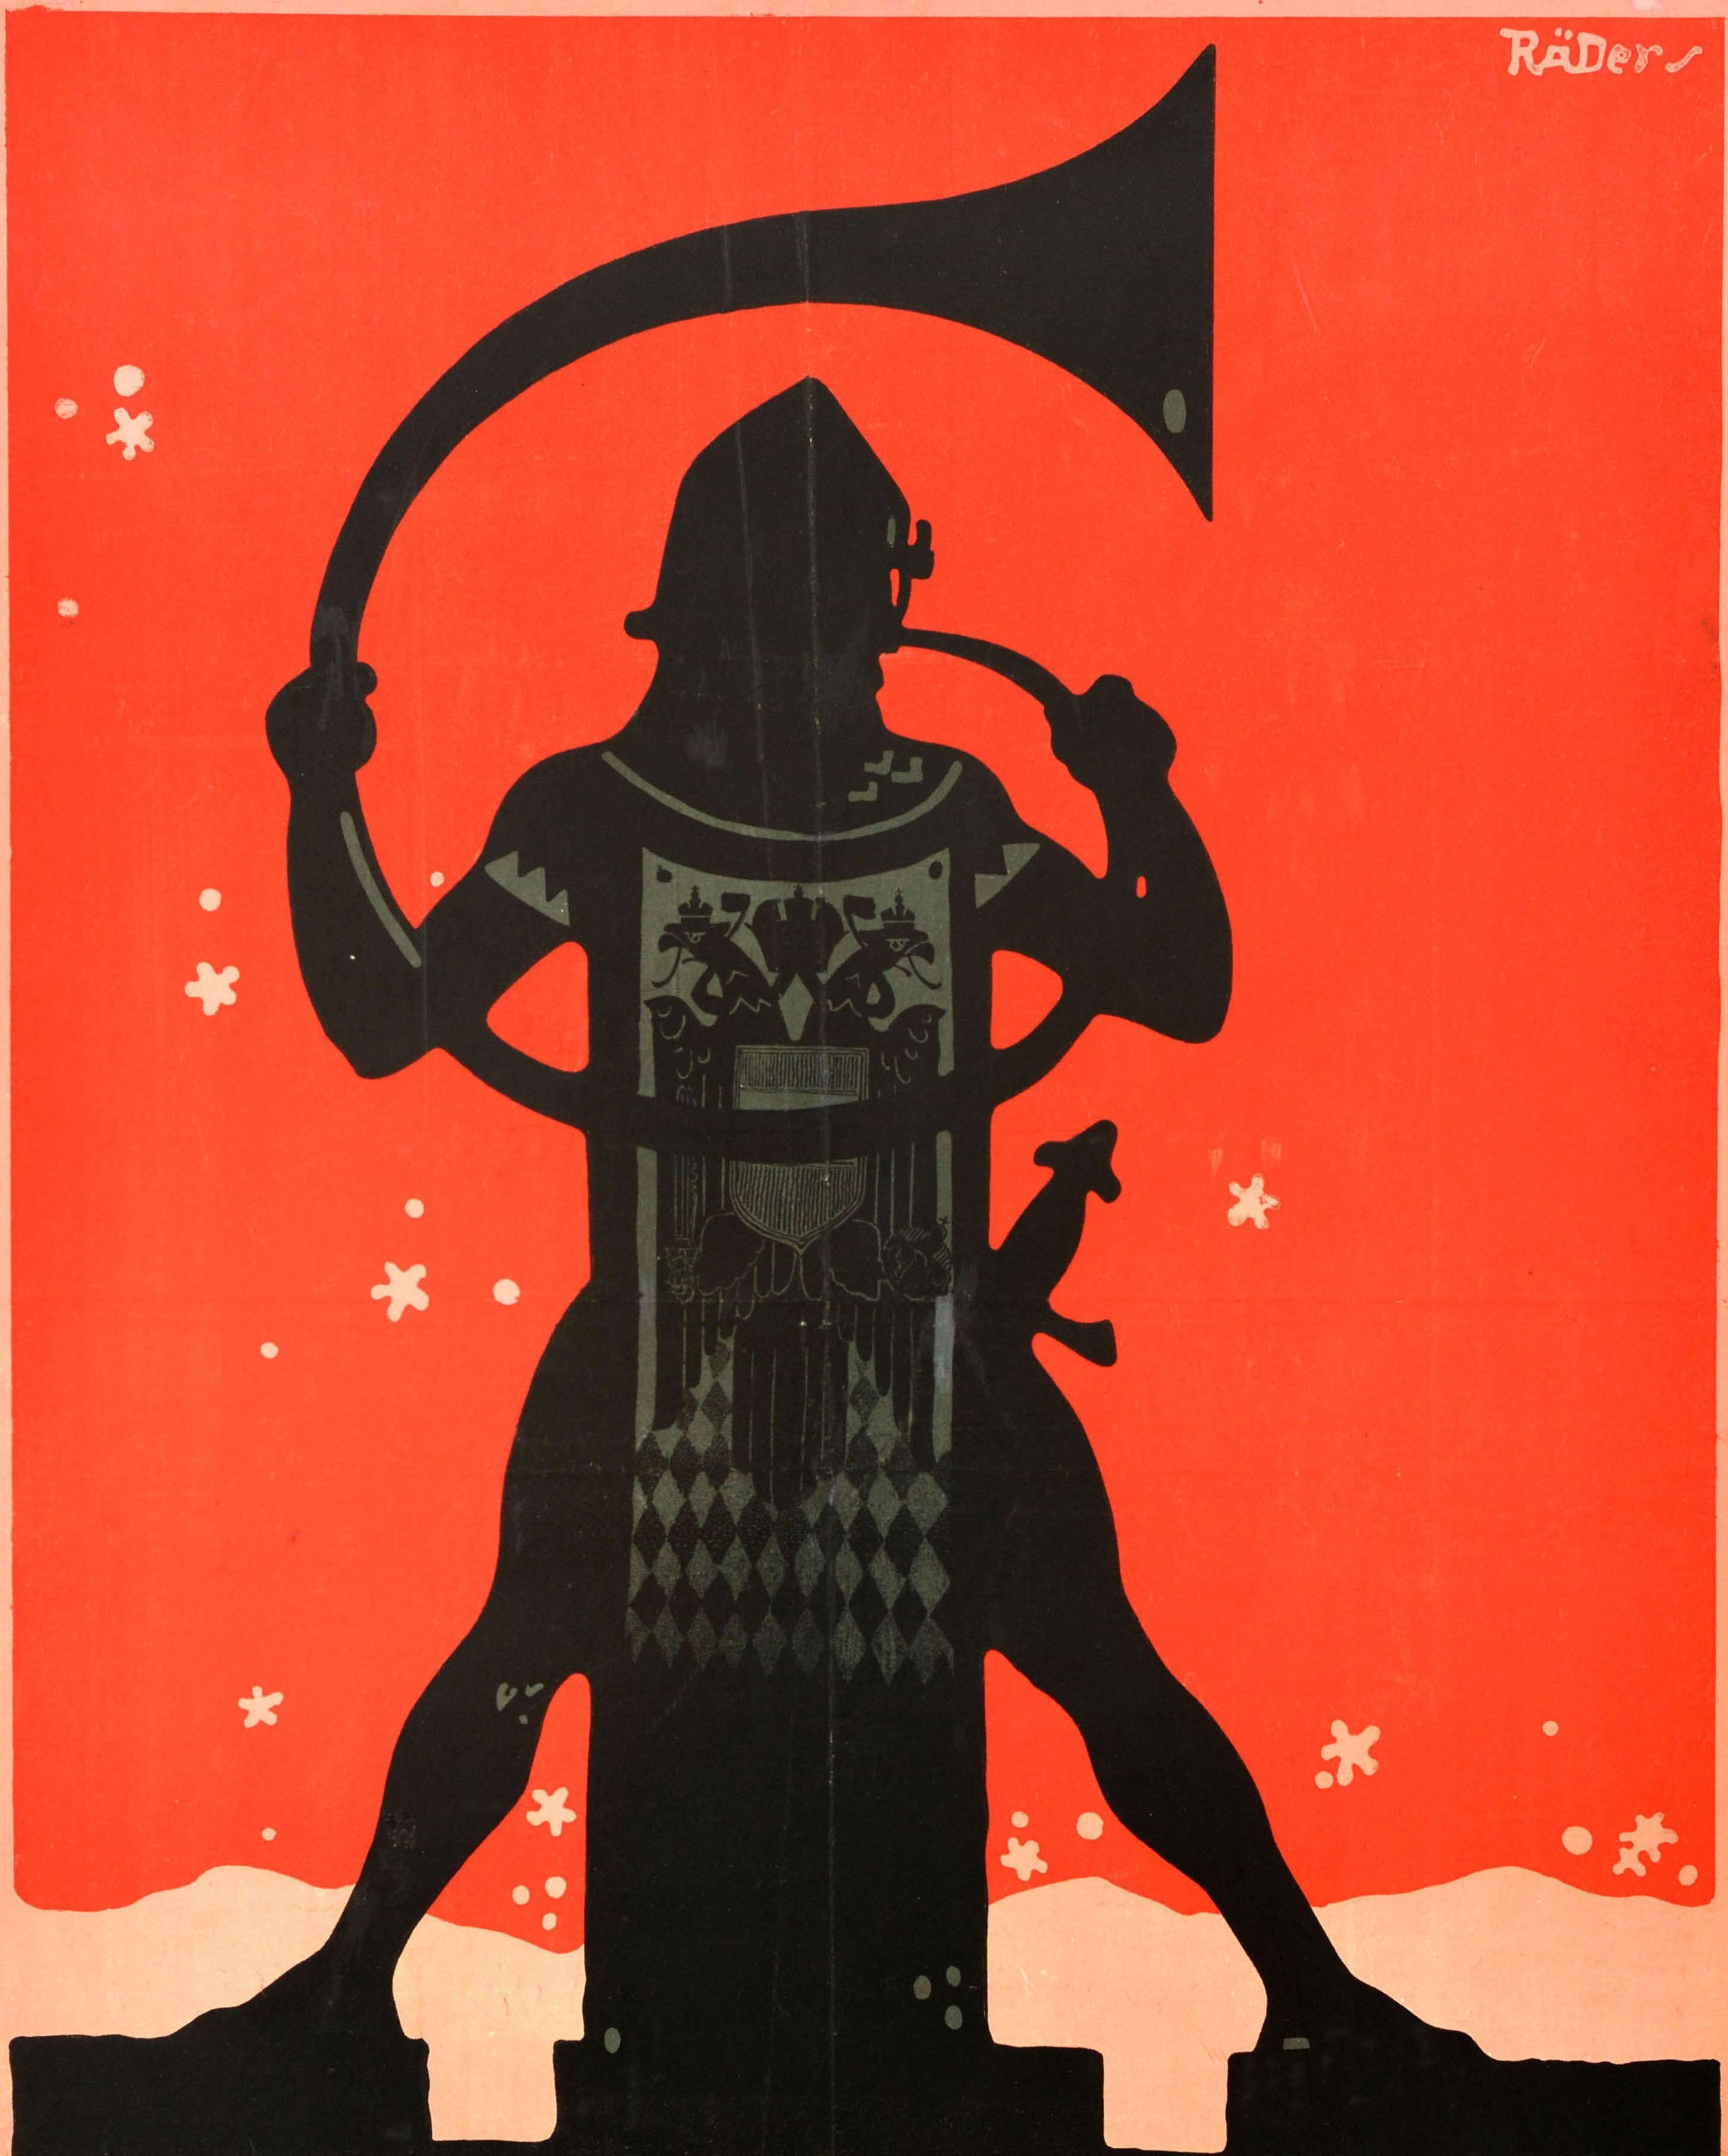 Originales antikes Kriegsanleiheplakat des Ersten Weltkriegs für die 7. österreichische Kriegsanleihezeichnung / Zeichnet 7. Oesterr. Kriegsanleihe mit der Silhouette eines Soldaten, der ein Horn spielt, während Schnee auf den roten Hintergrund